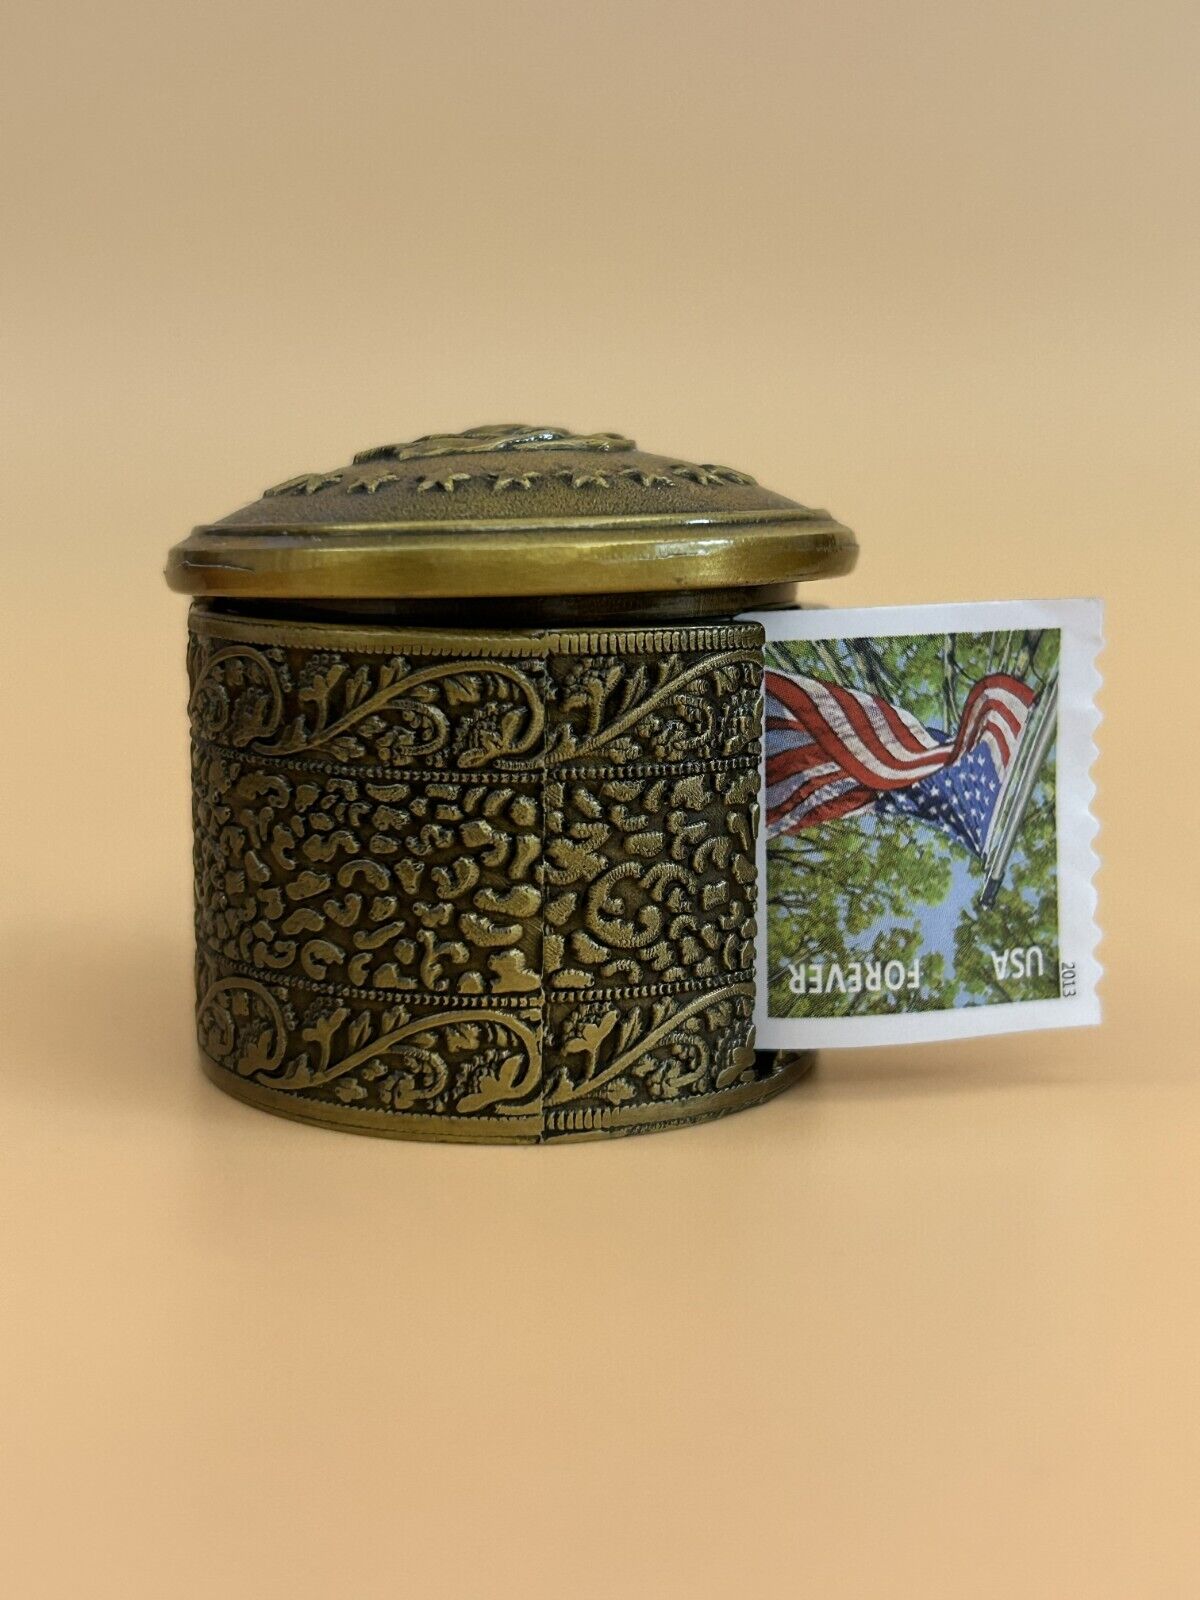 USPS roll coil stamp metal Elegant dispenser office decor brass Floral motif